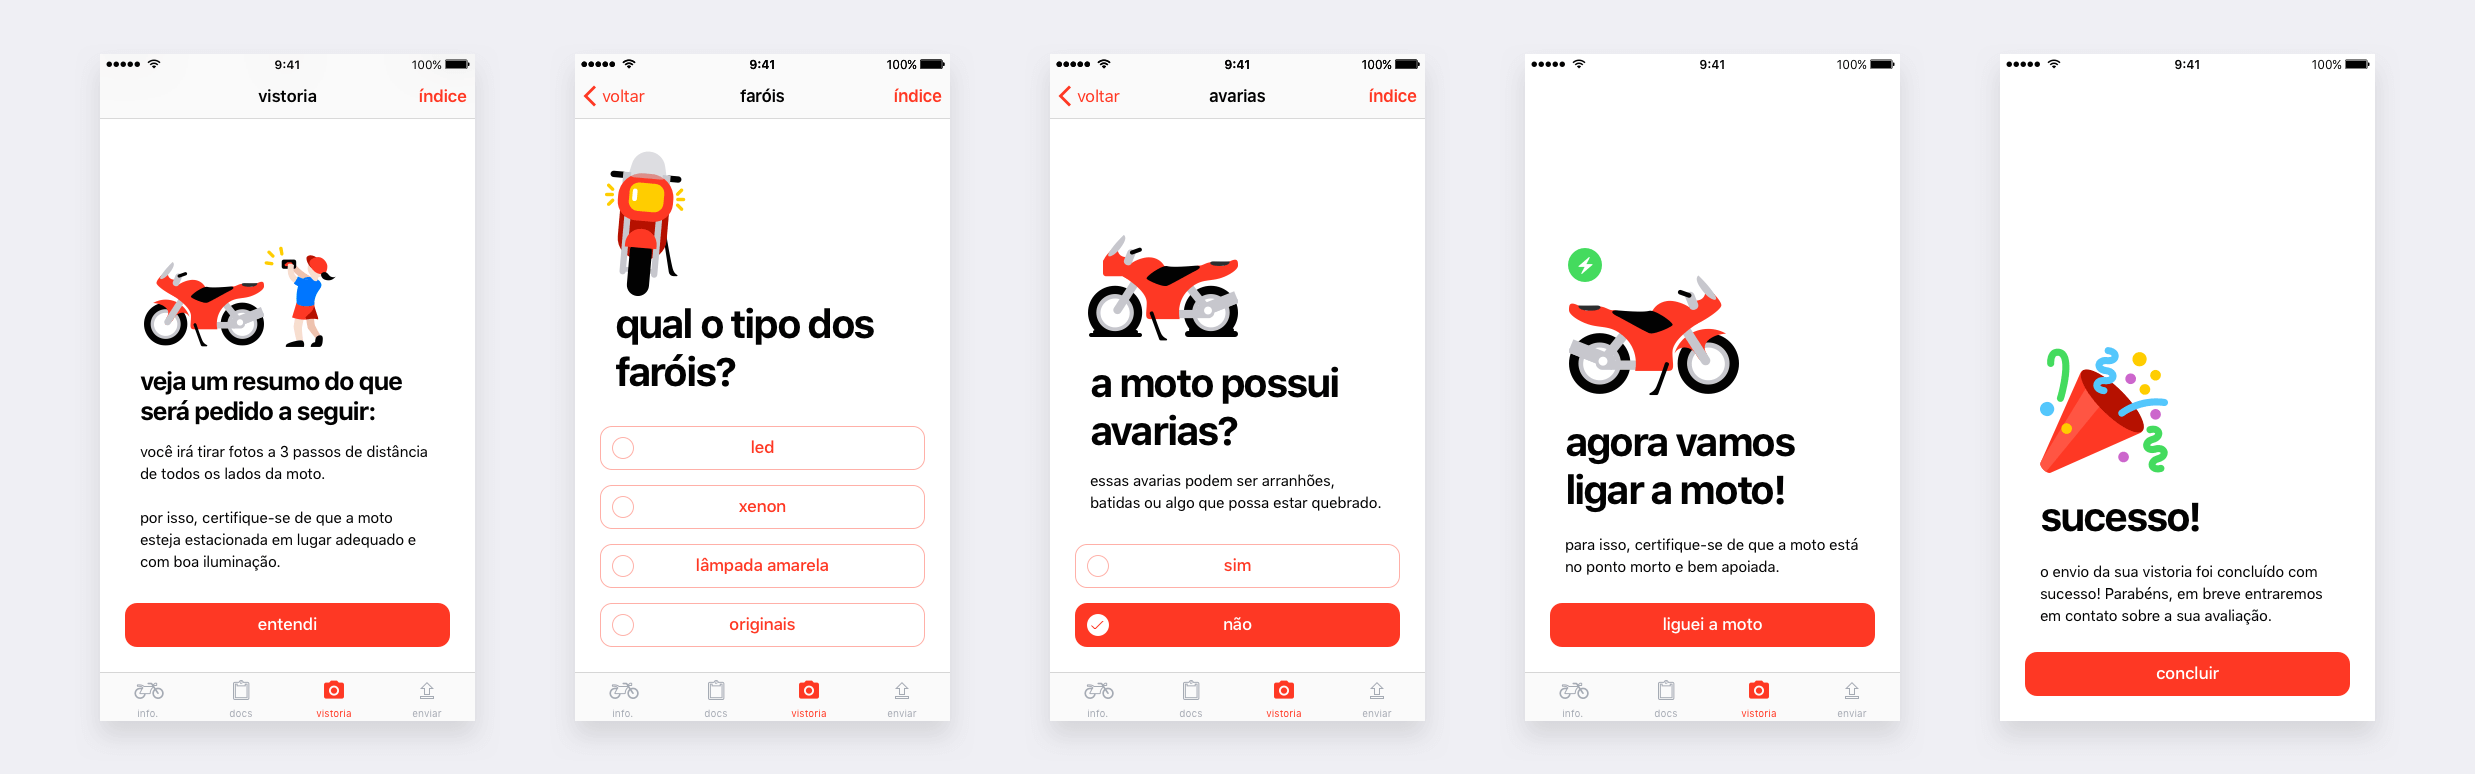 Aplicativo iOS de vistoria de veículos